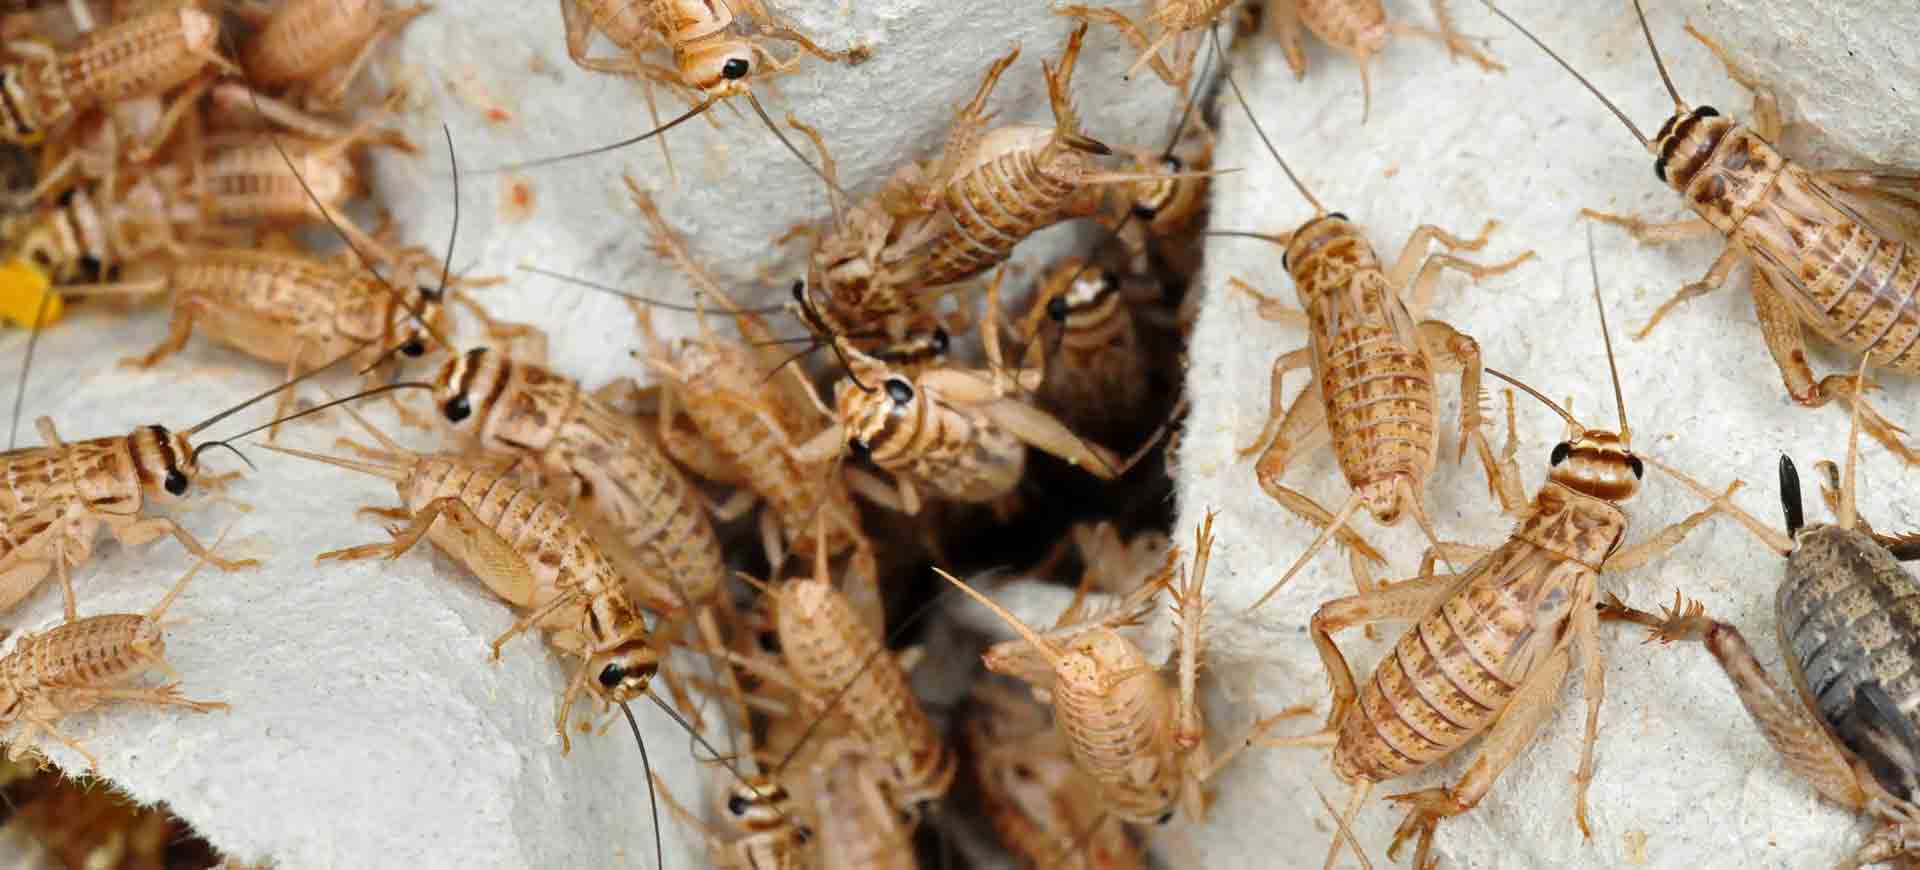 cricket pest control eastlake